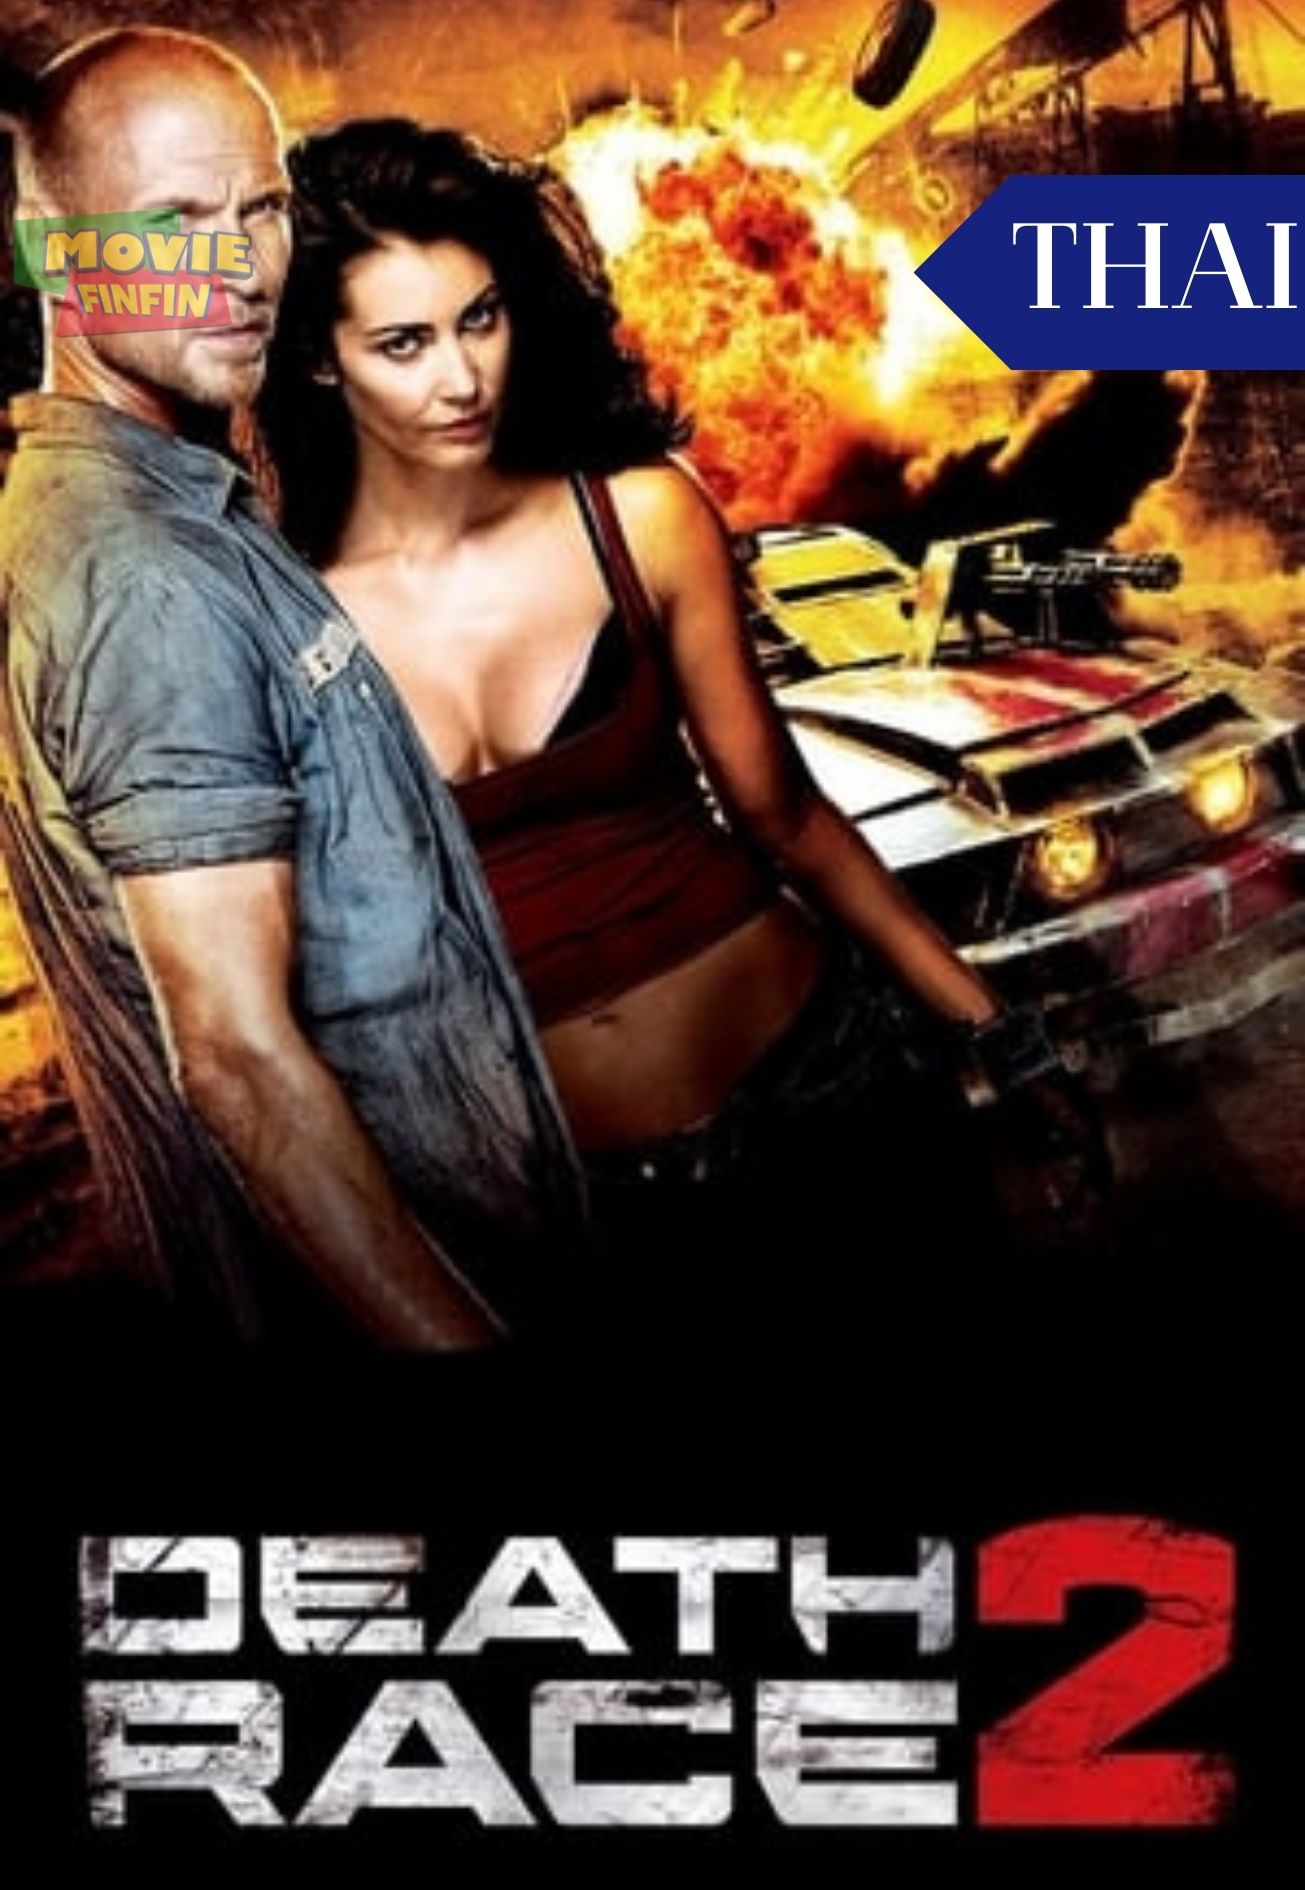 Death Race 2 (2010) ซิ่งสั่งตาย 2